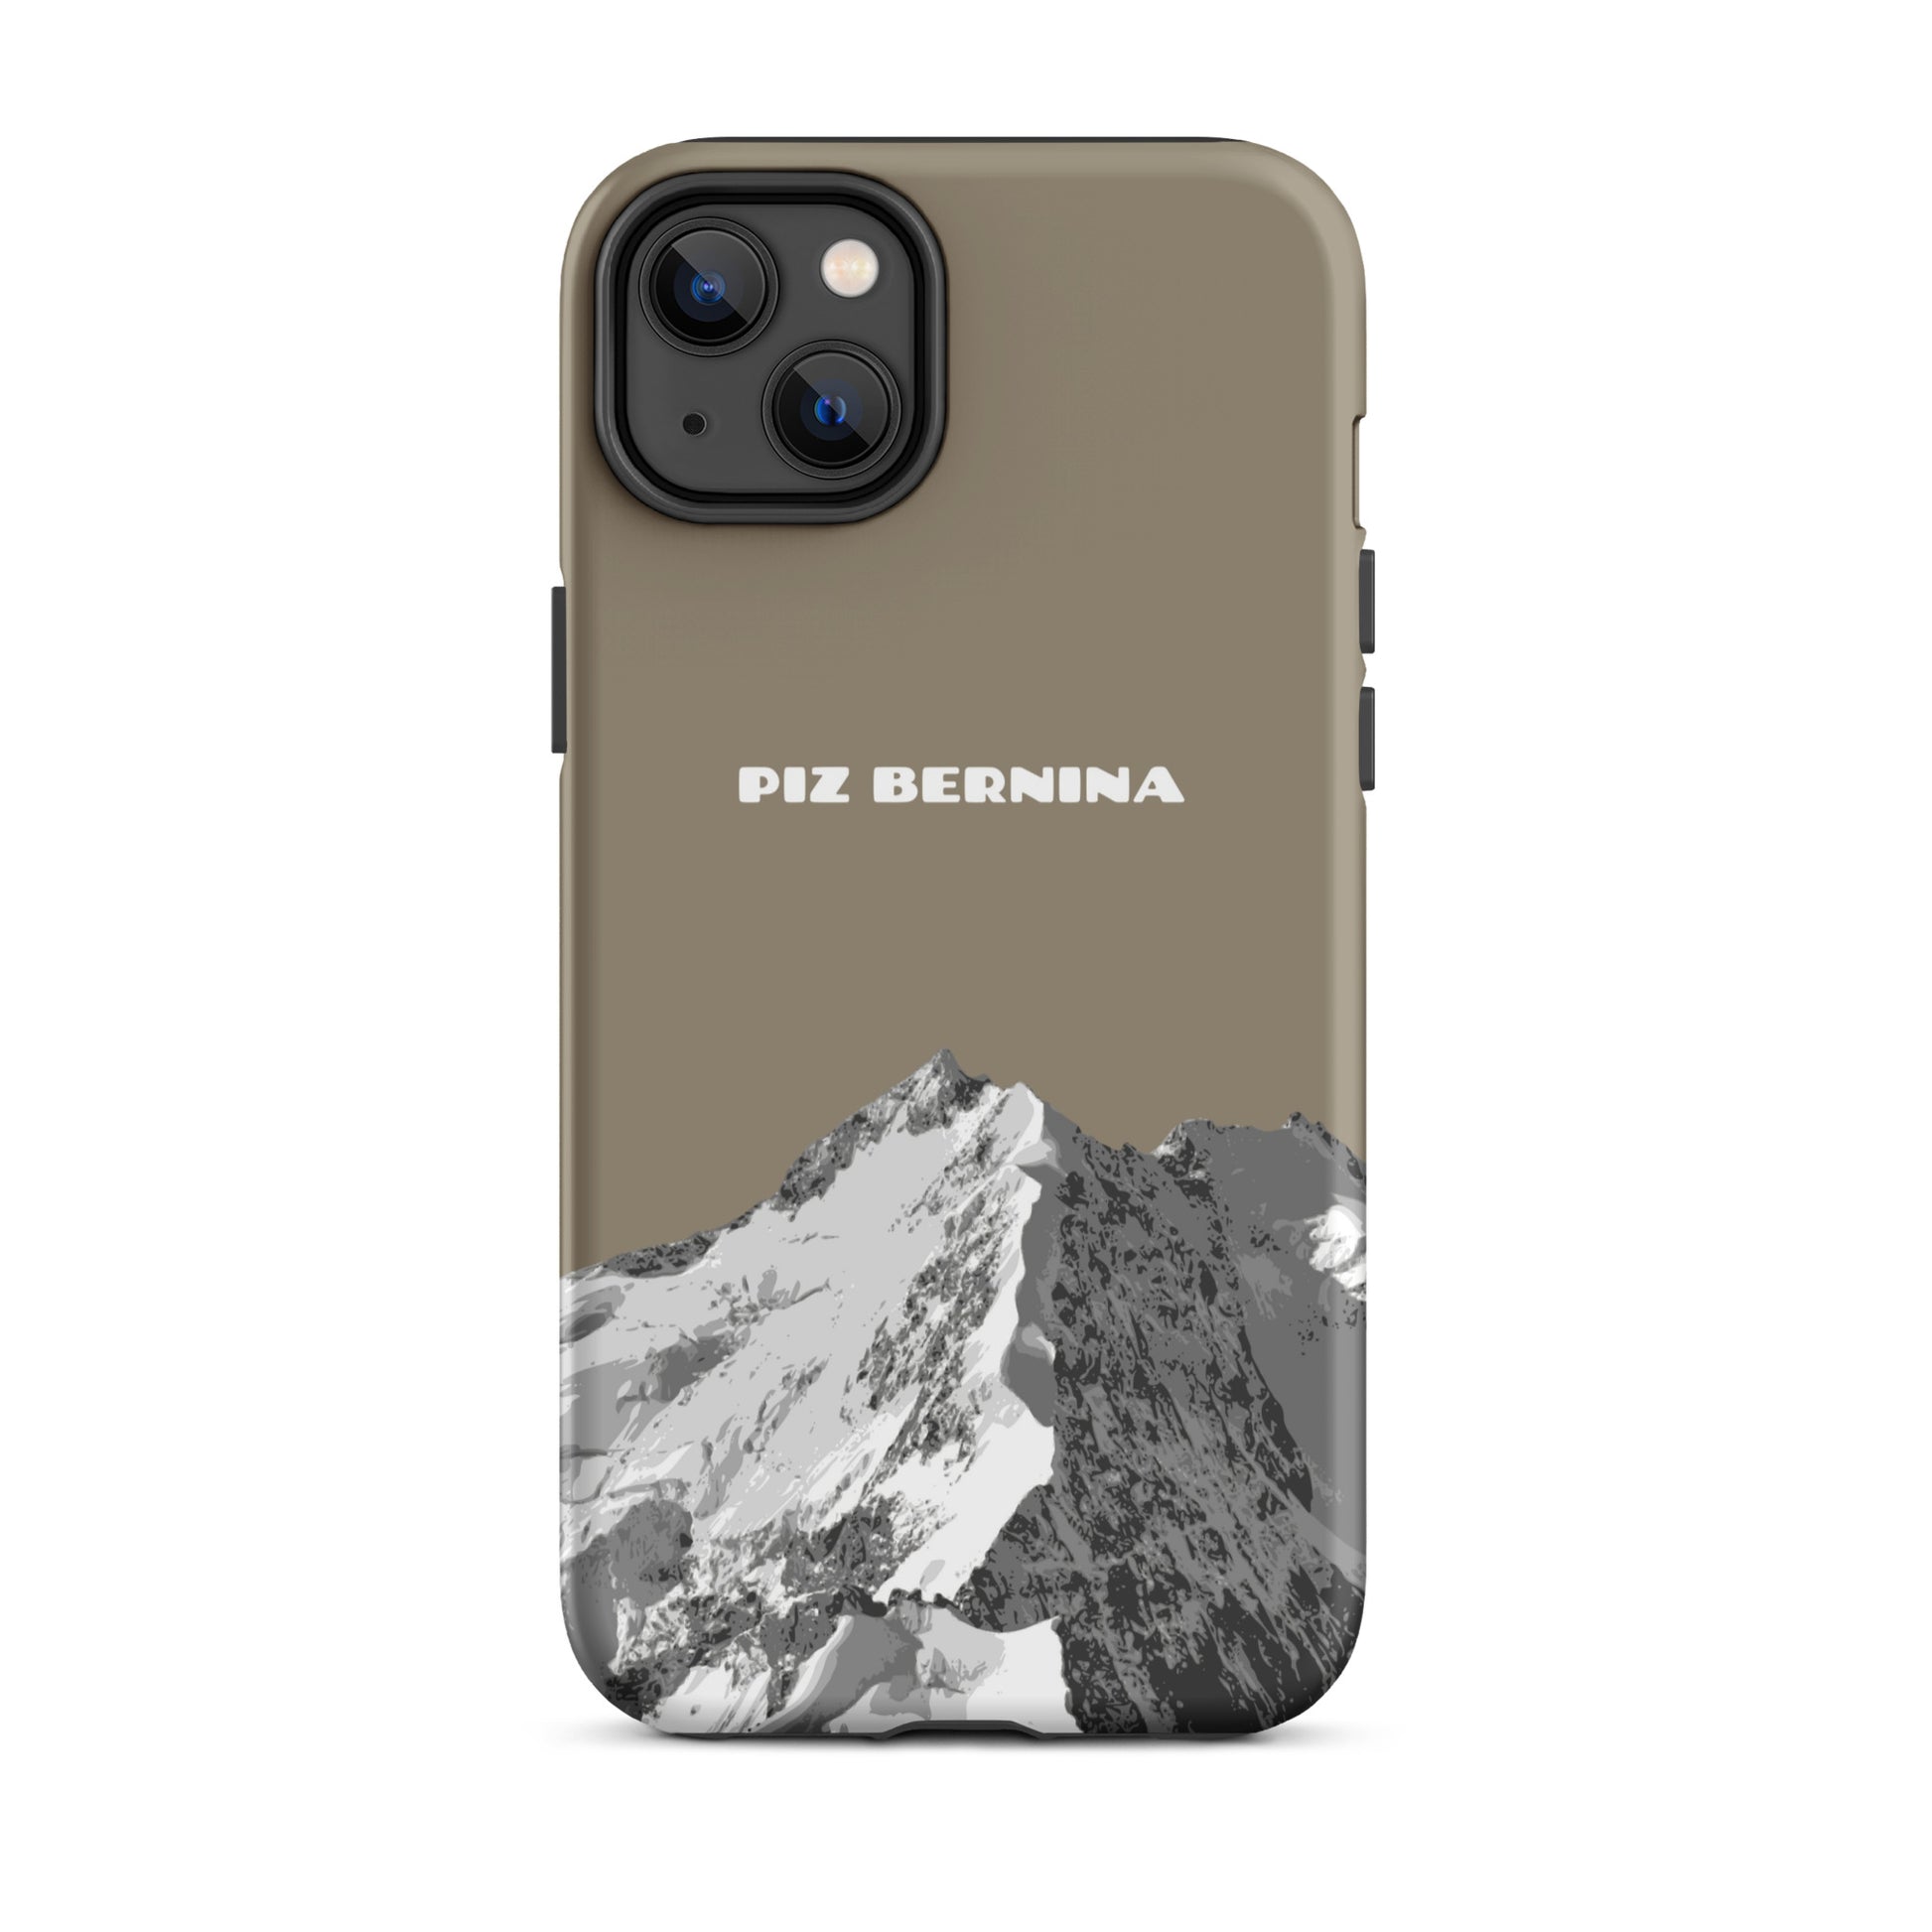 Hülle für das iPhone 14 Plus von Apple in der Farbe Graubraun, dass den Piz Bernina in Graubünden zeigt.